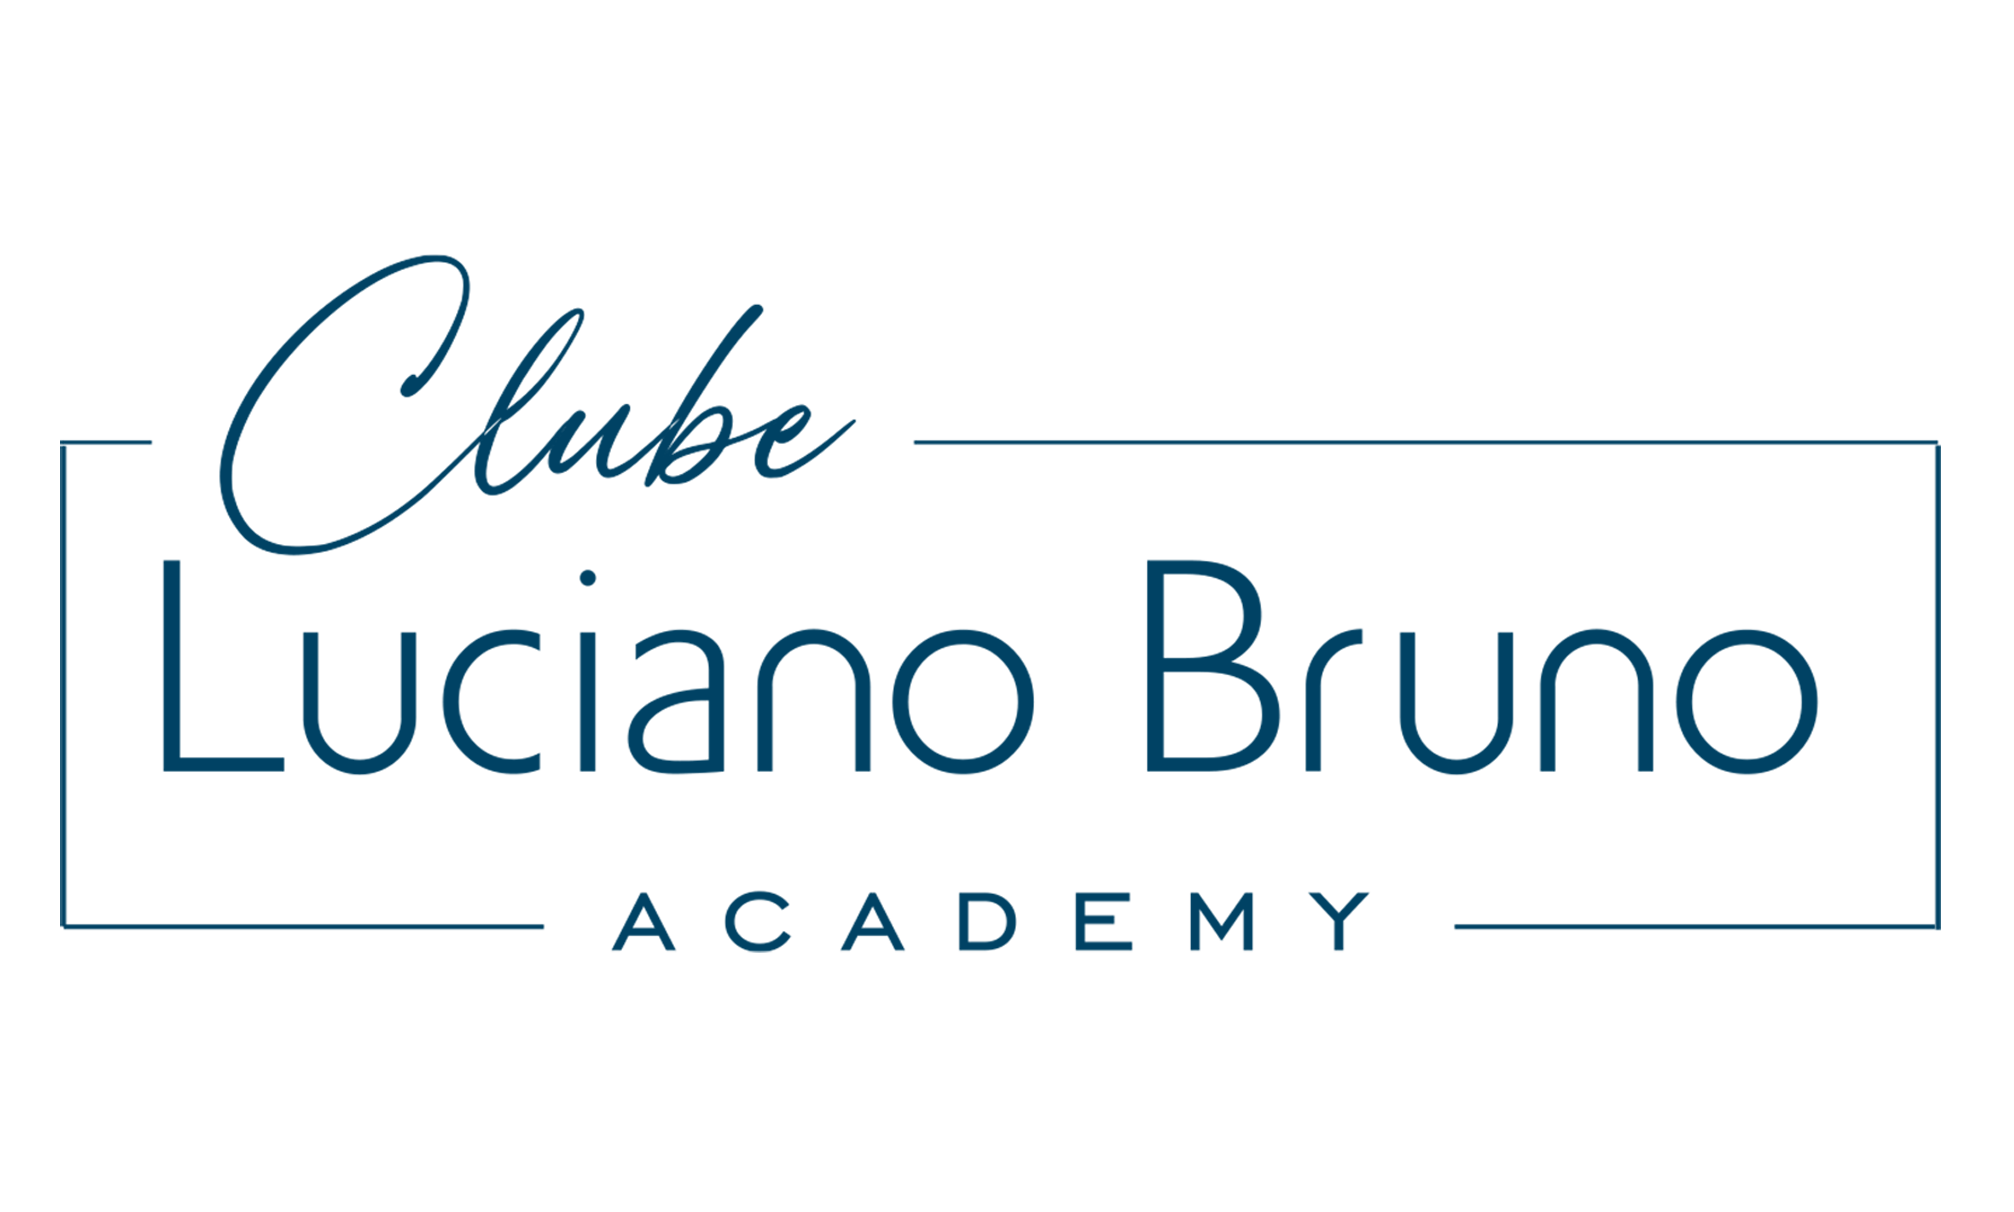 Clube Academy